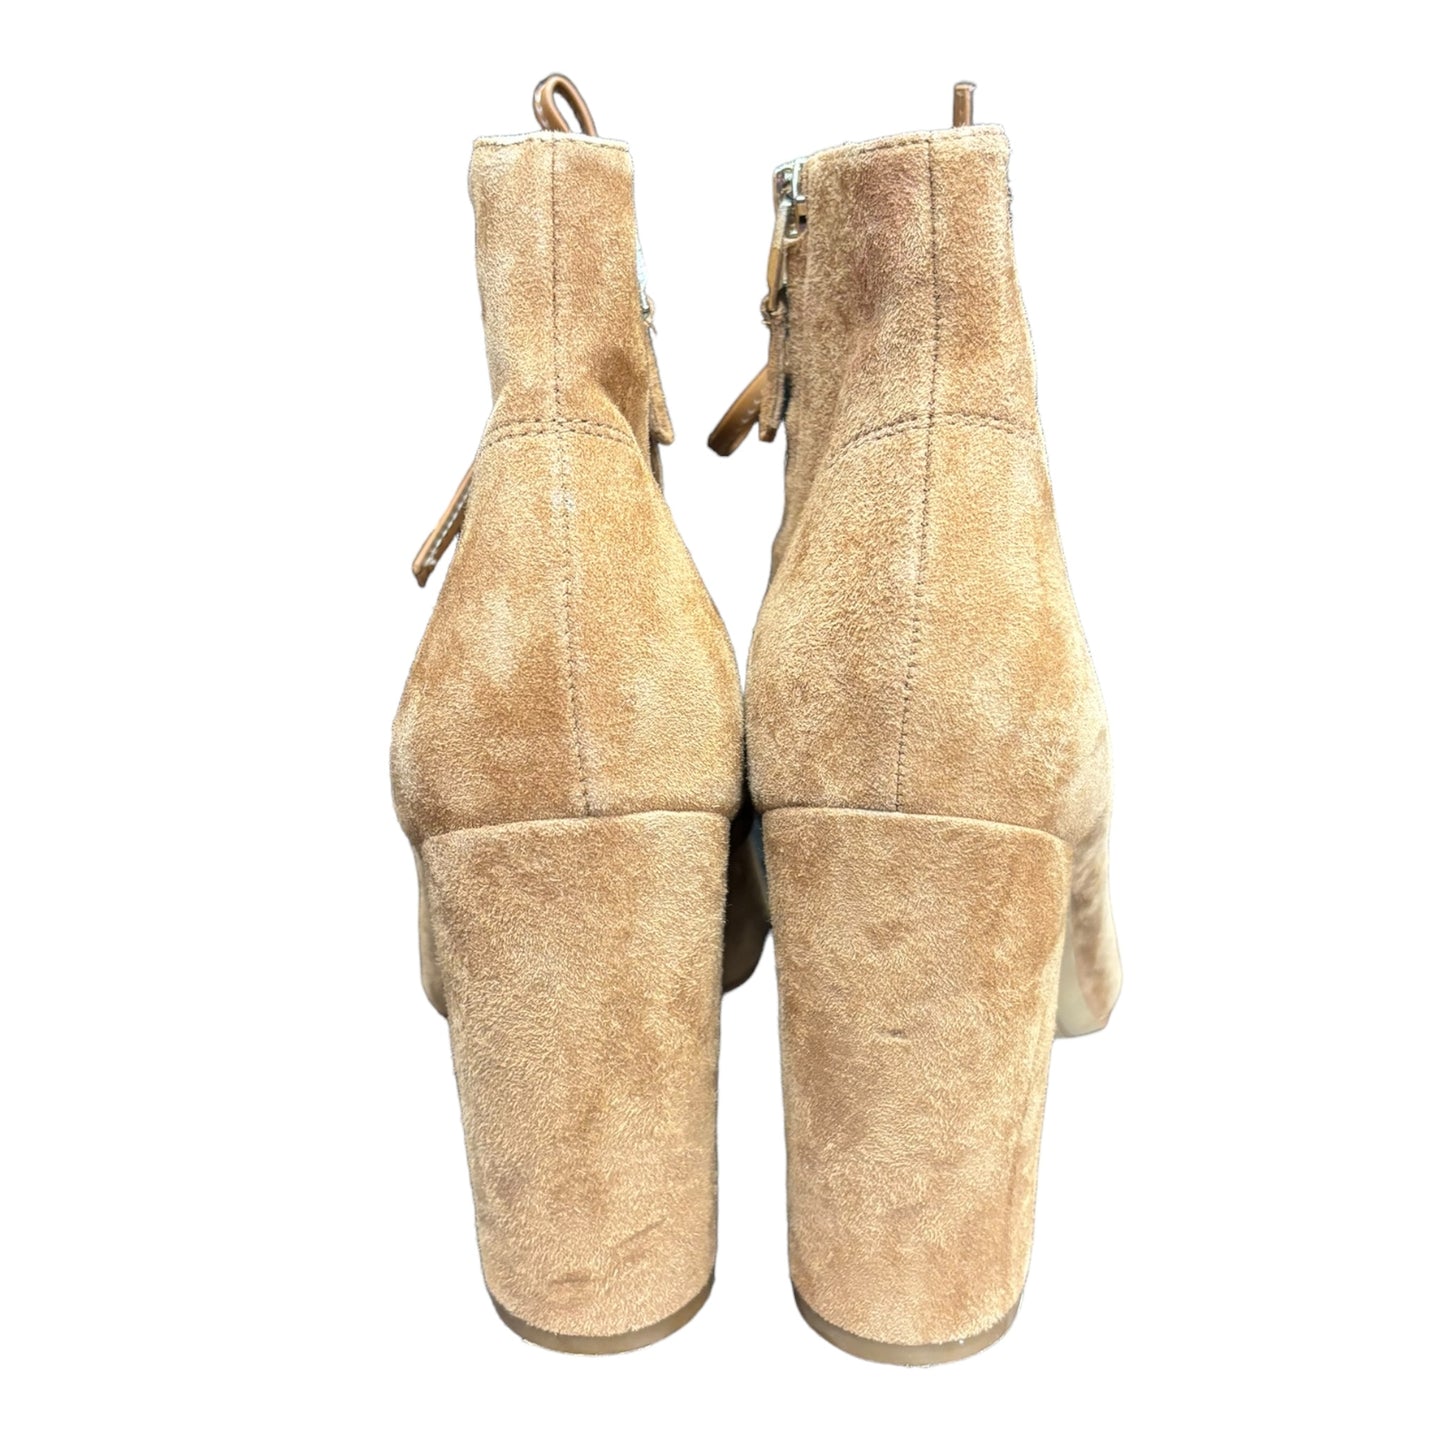 Sandals Heels Block By Sam Edelman  Size: 8.5